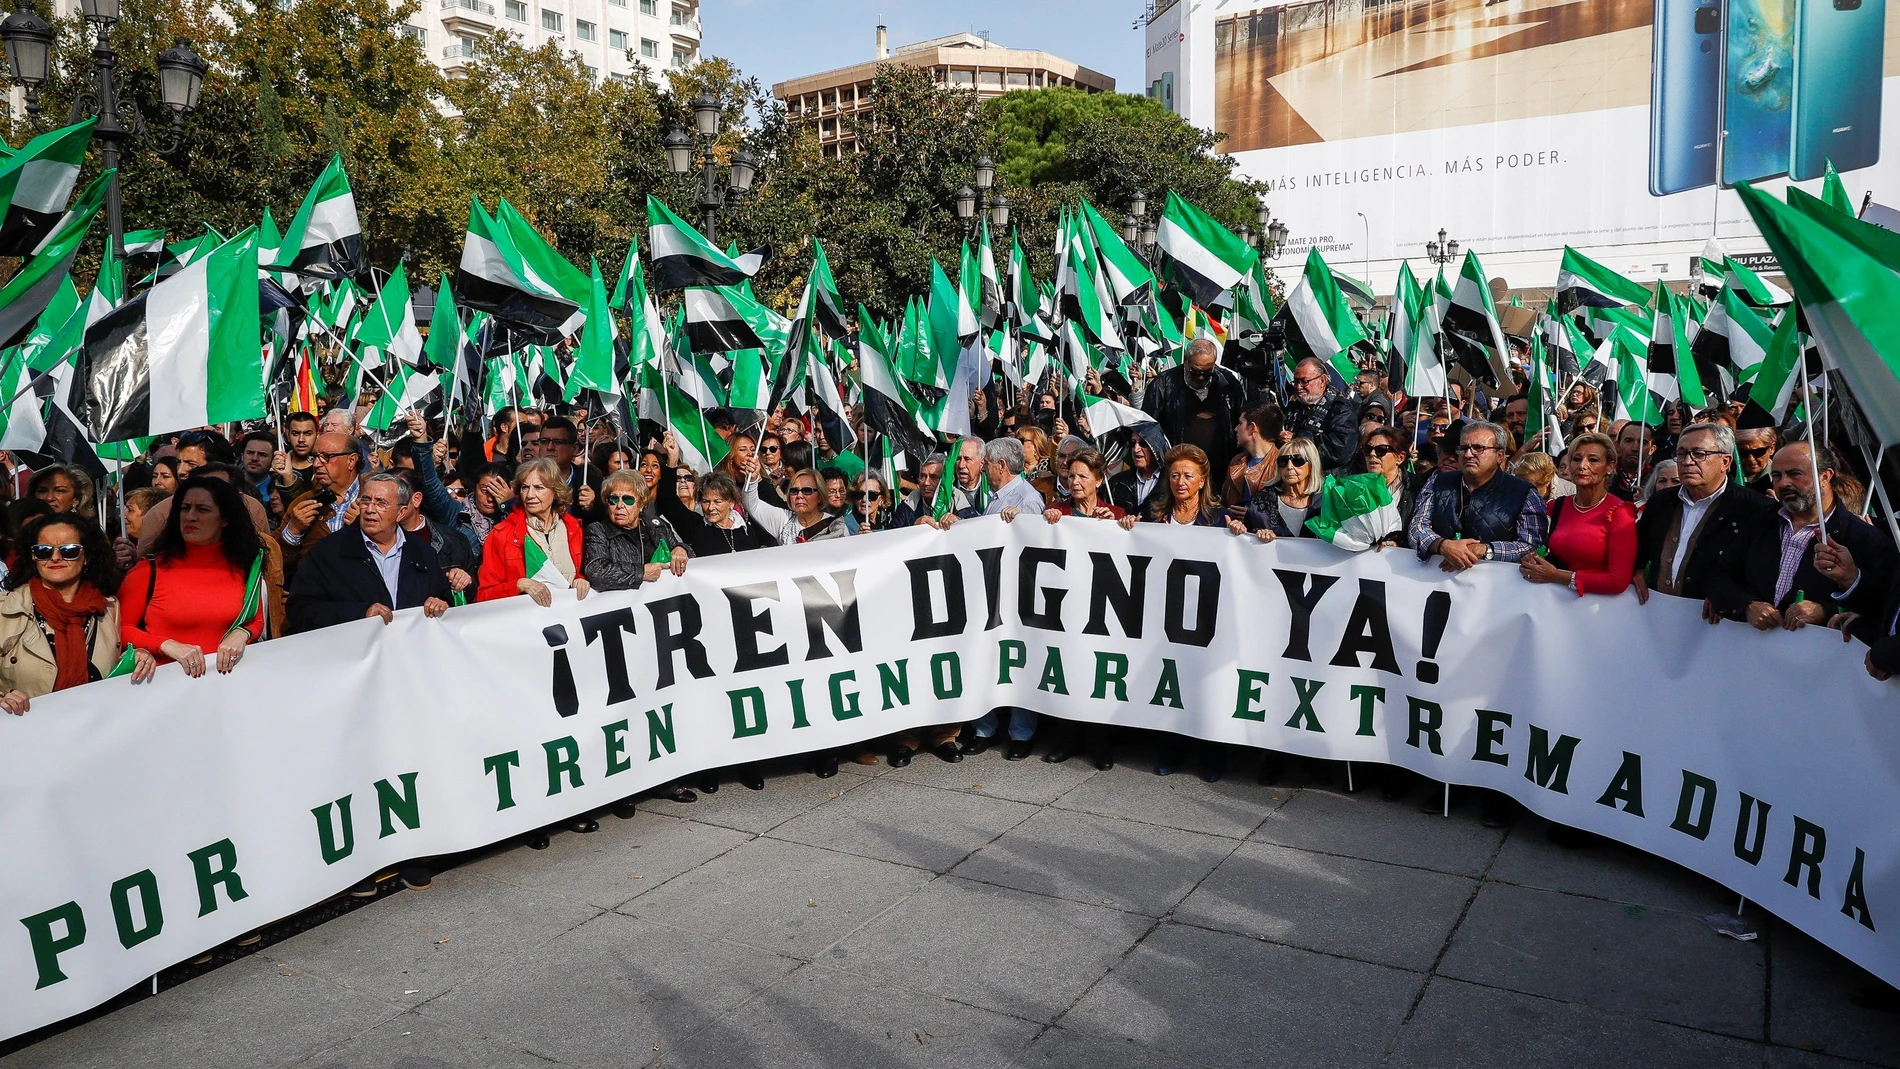 Cientos de personas se han concentrado hoy en Madrid para exigir un "tren digno y del siglo XXI"